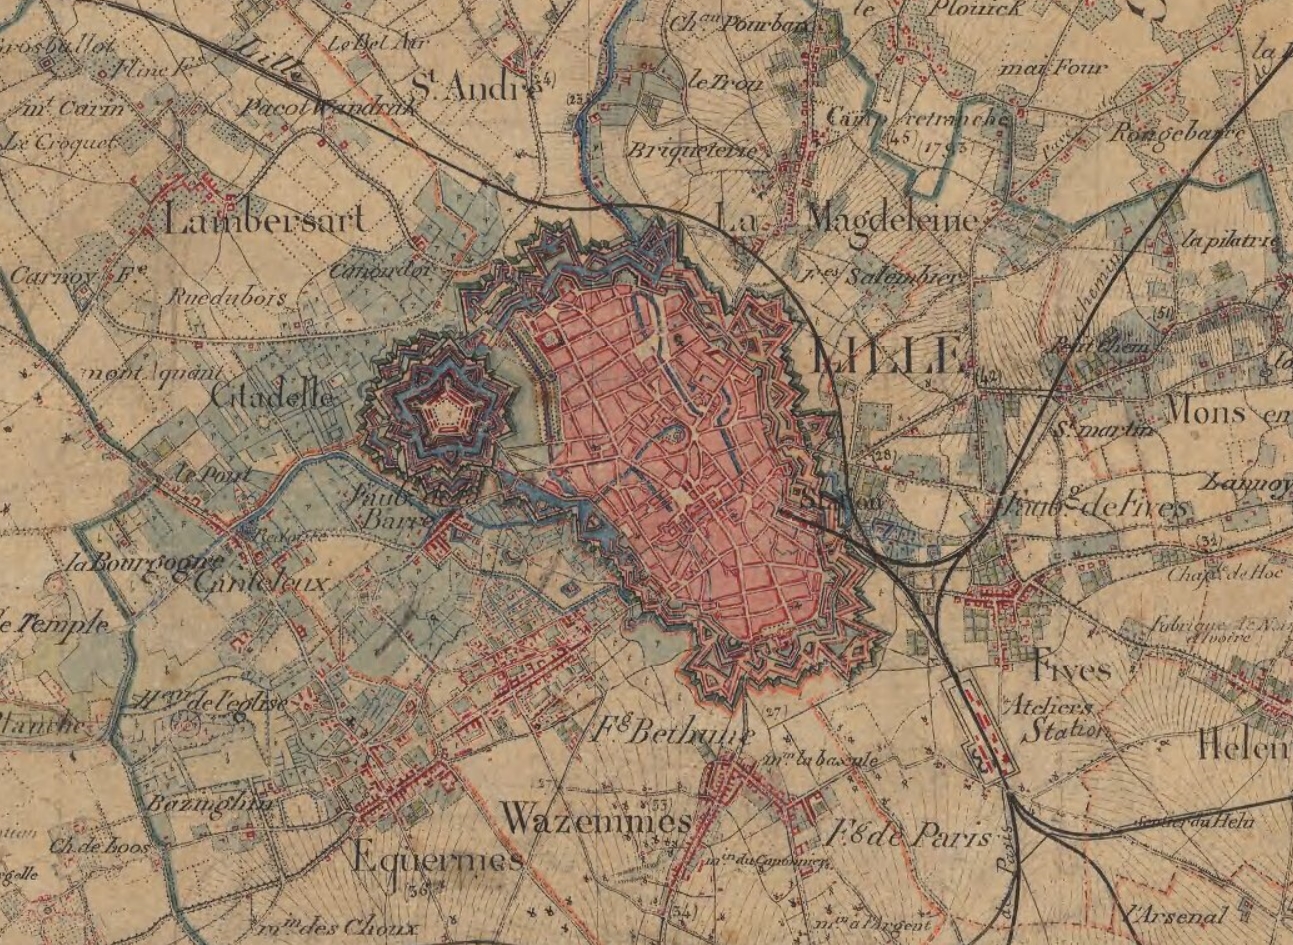 Lille et ses fortifications autour de 1850.
Image Géoportail